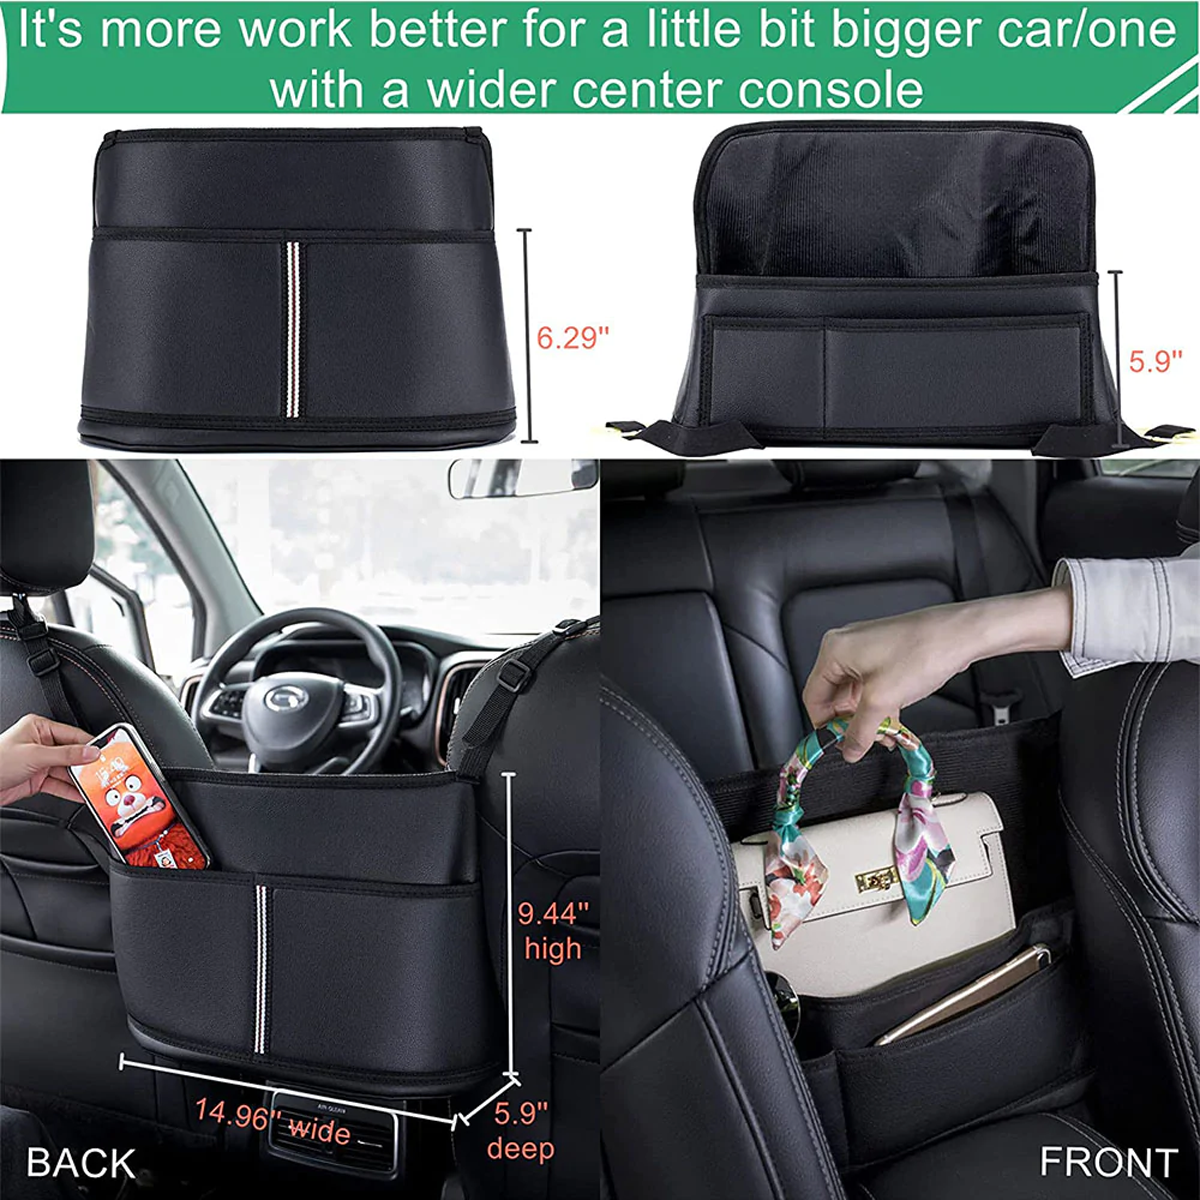 Car Purse Holder for Car Handbag Holder Between Seats Premium PU Leather, Custom Fit For Car, Hanging Car Purse Storage Pocket Back Seat Pet Barrier DLMT223